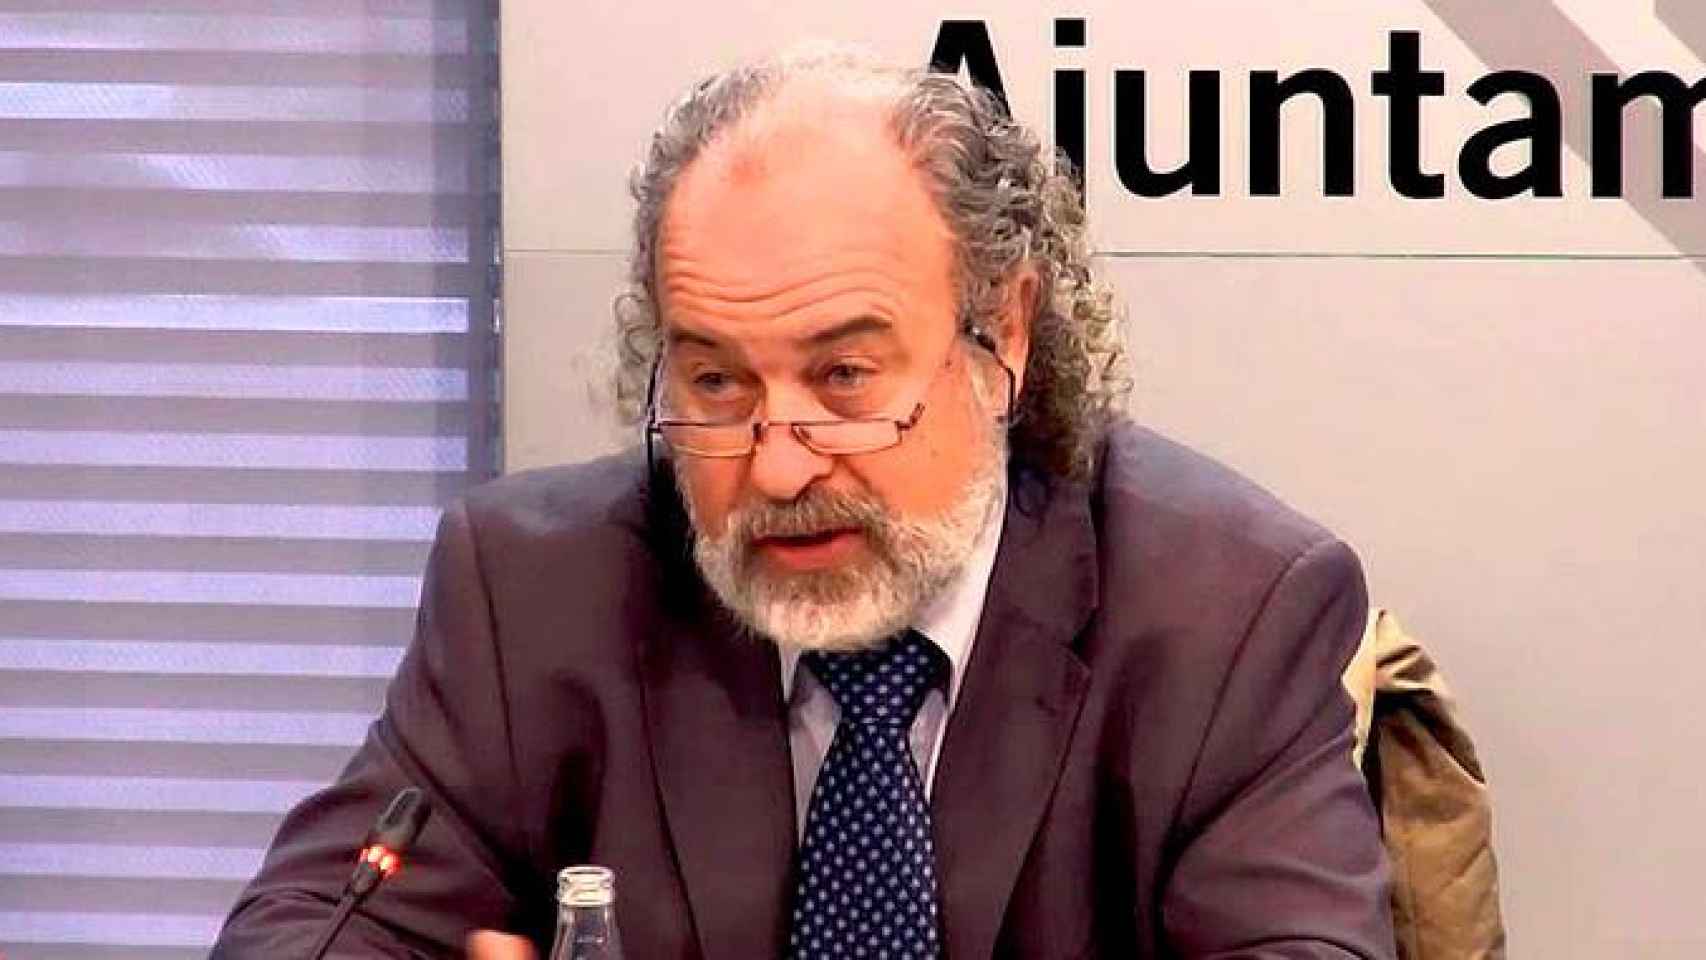 Amadeu Recasens, comisionado de Seguridad del ayuntamiento de Barcelona / CG